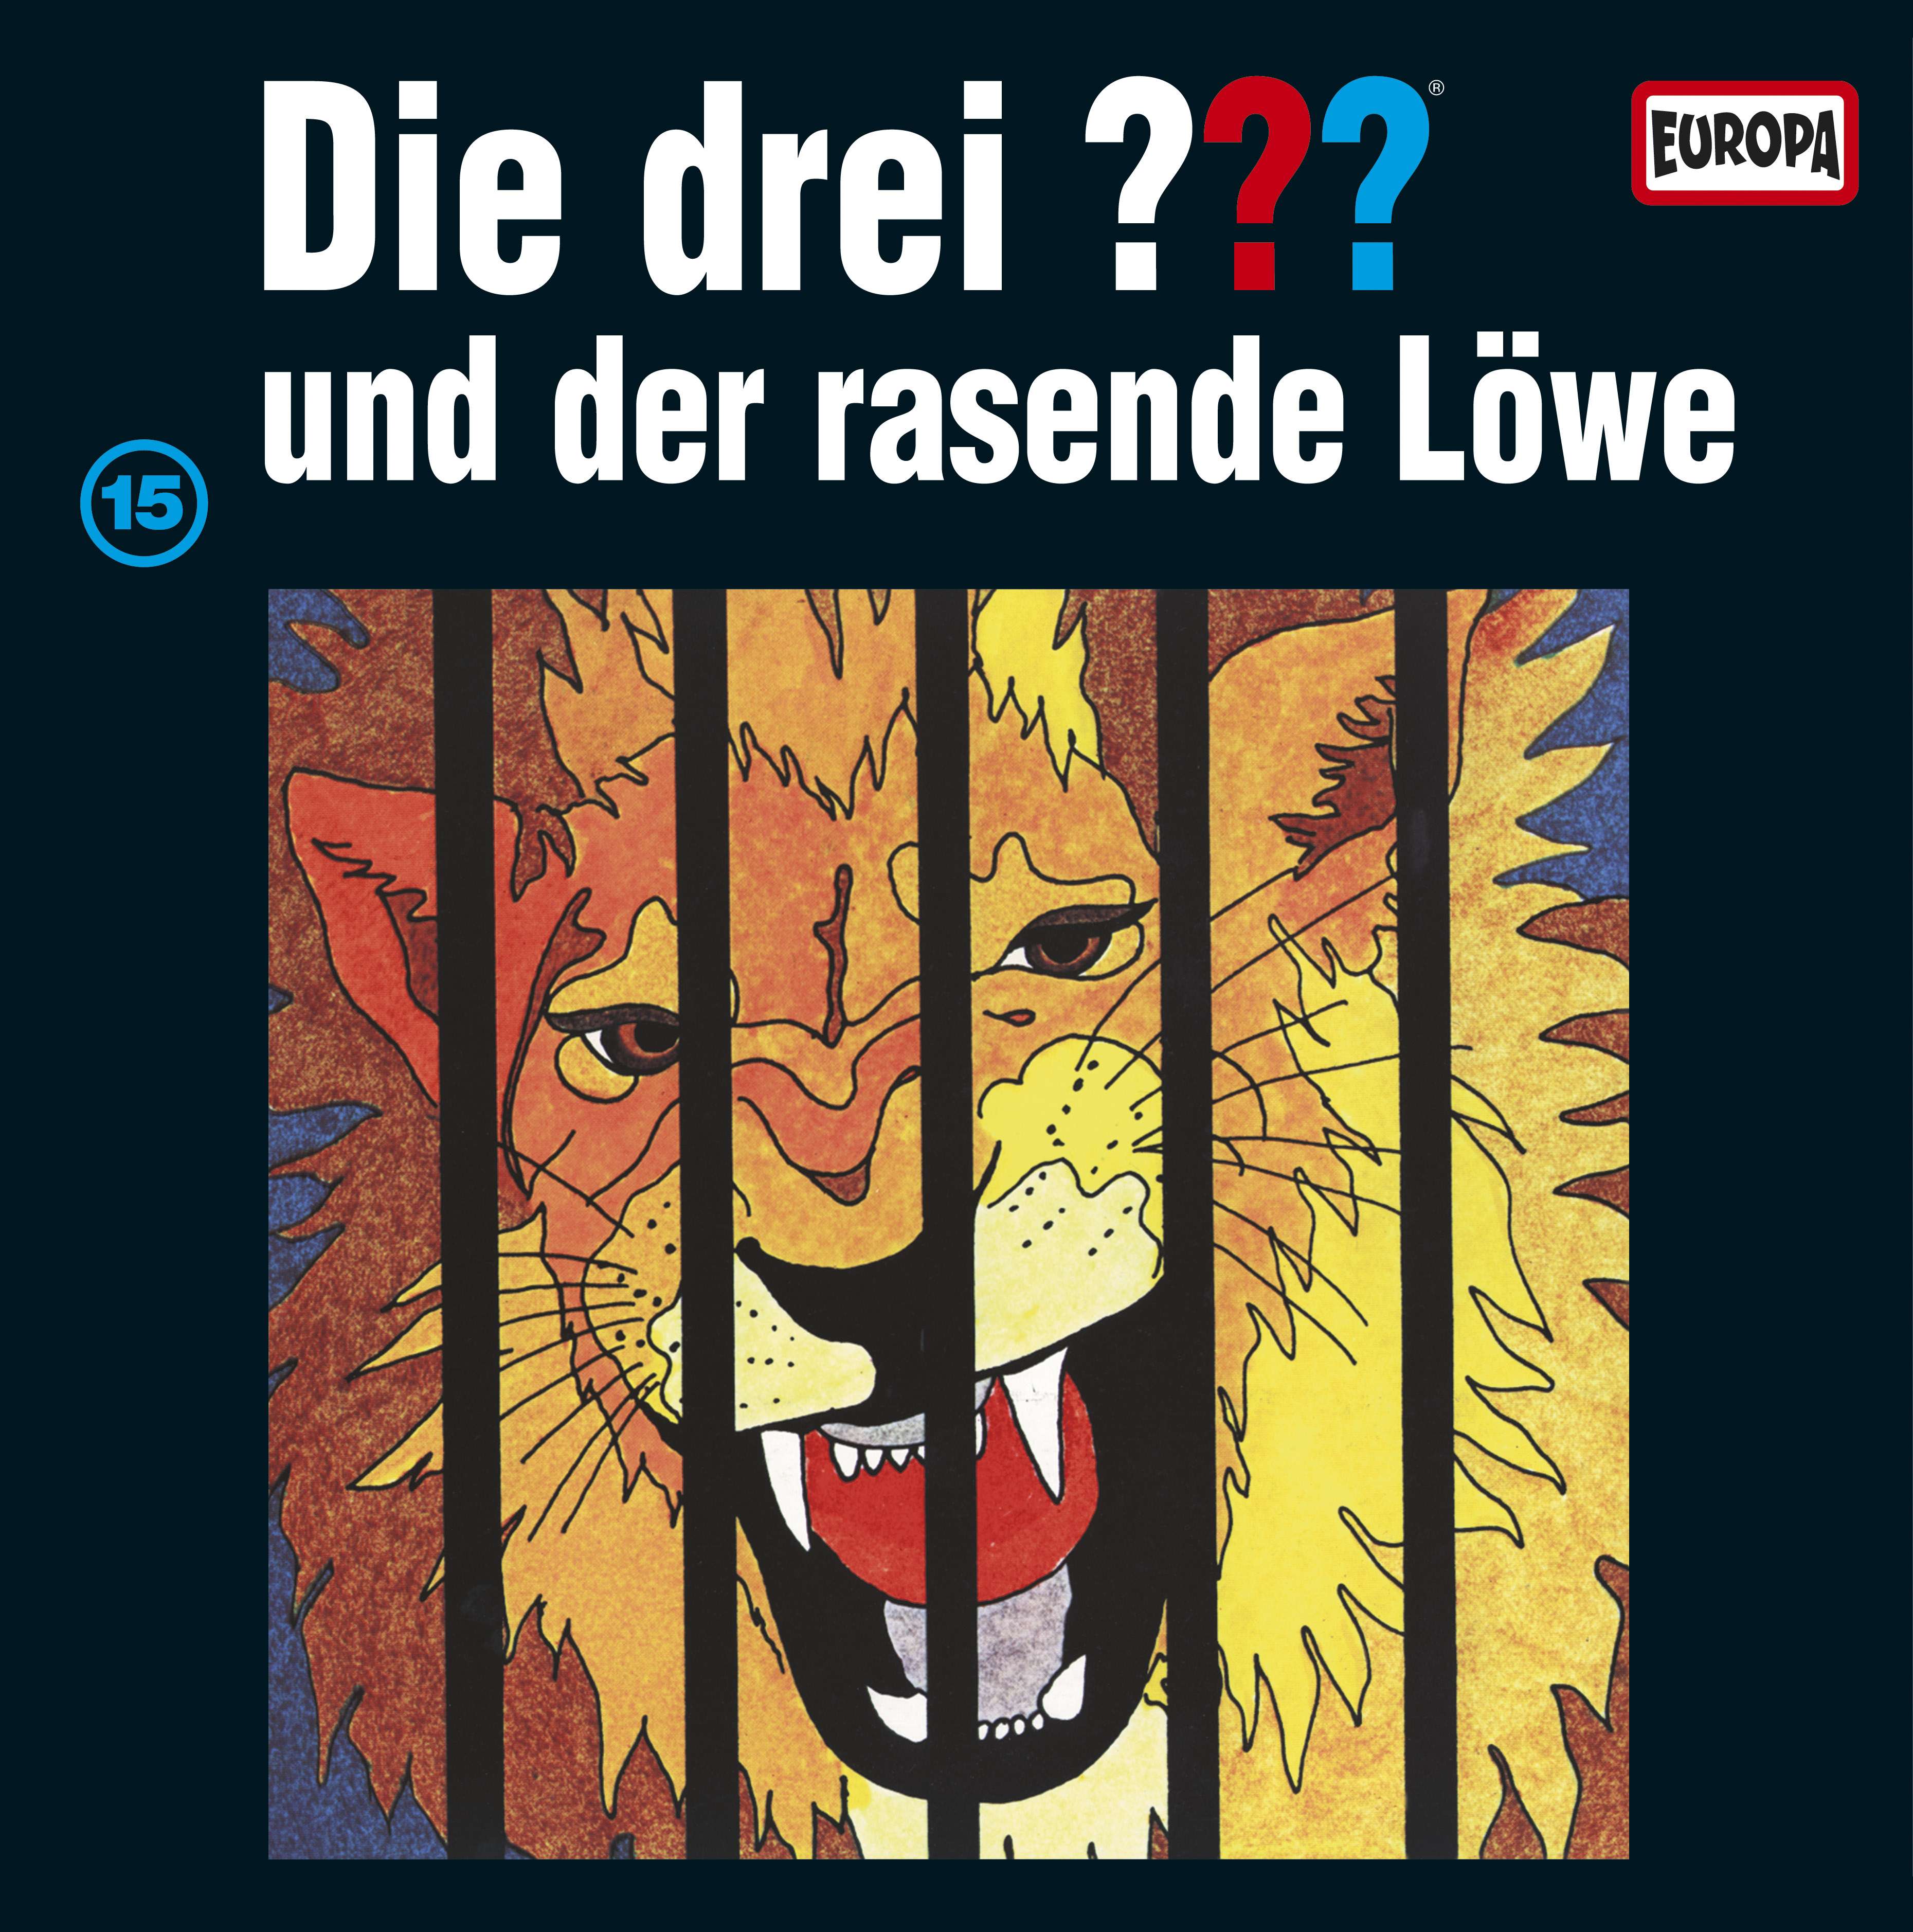 Die drei ??? - und der rasende Löwe (Picture Vinyl)